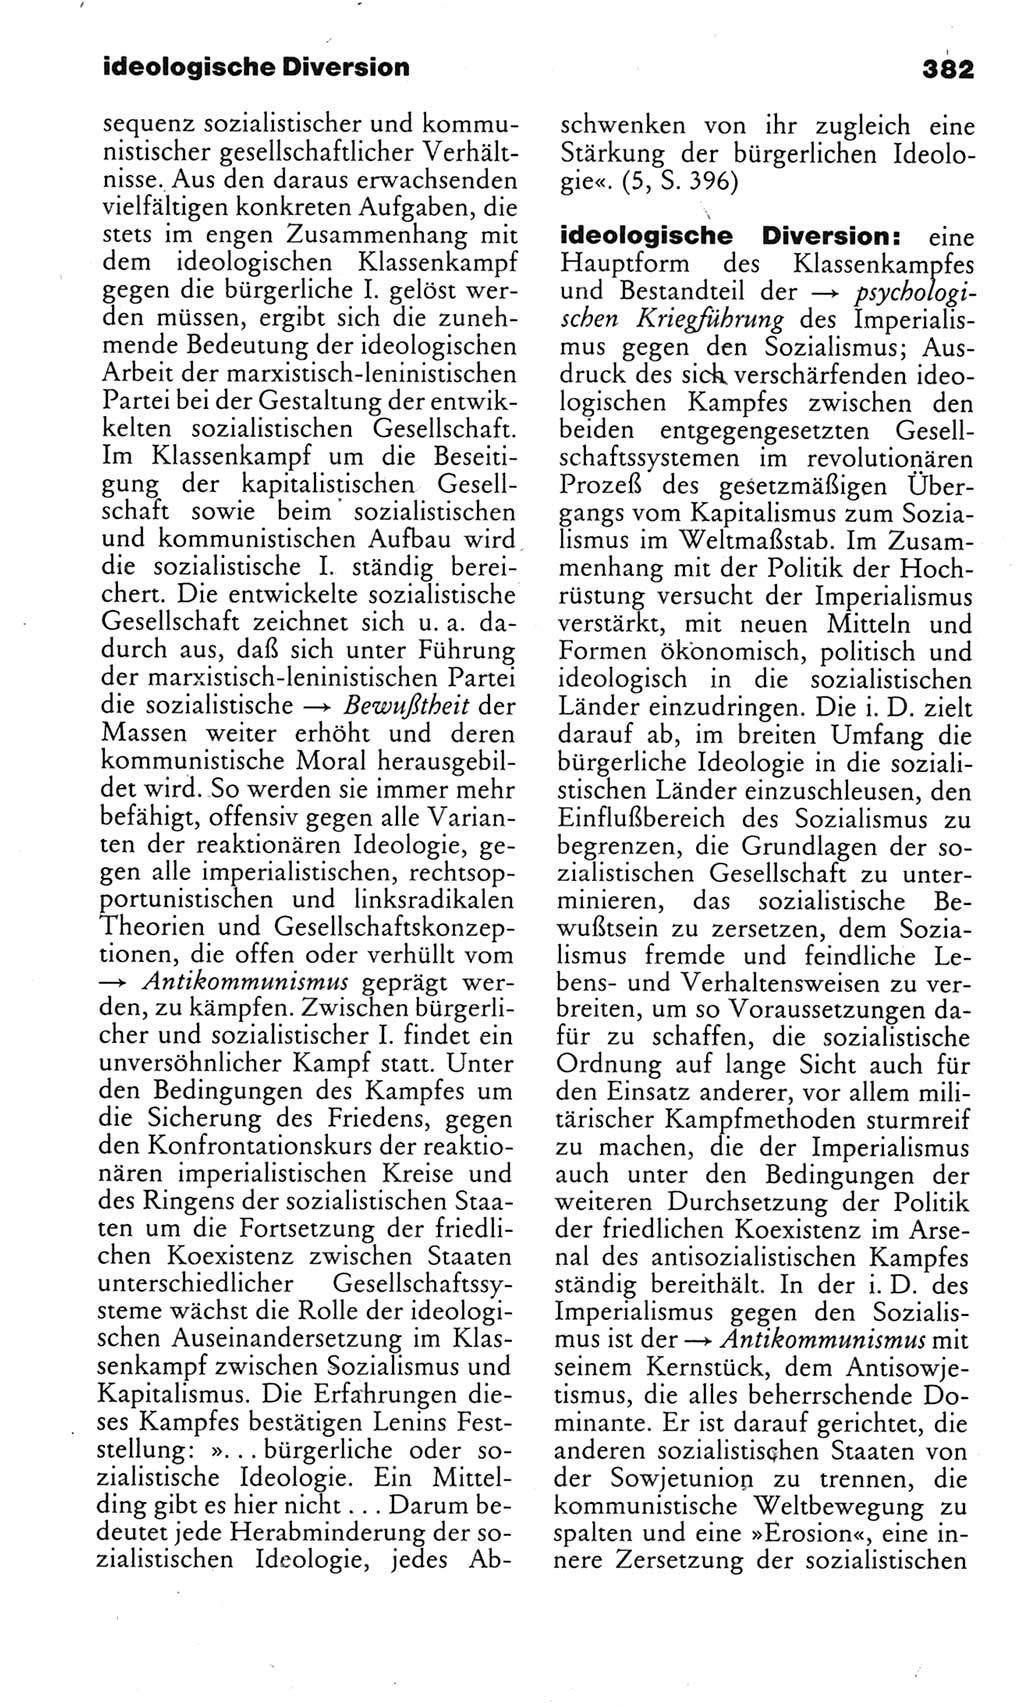 Kleines politisches Wörterbuch [Deutsche Demokratische Republik (DDR)] 1983, Seite 382 (Kl. pol. Wb. DDR 1983, S. 382)